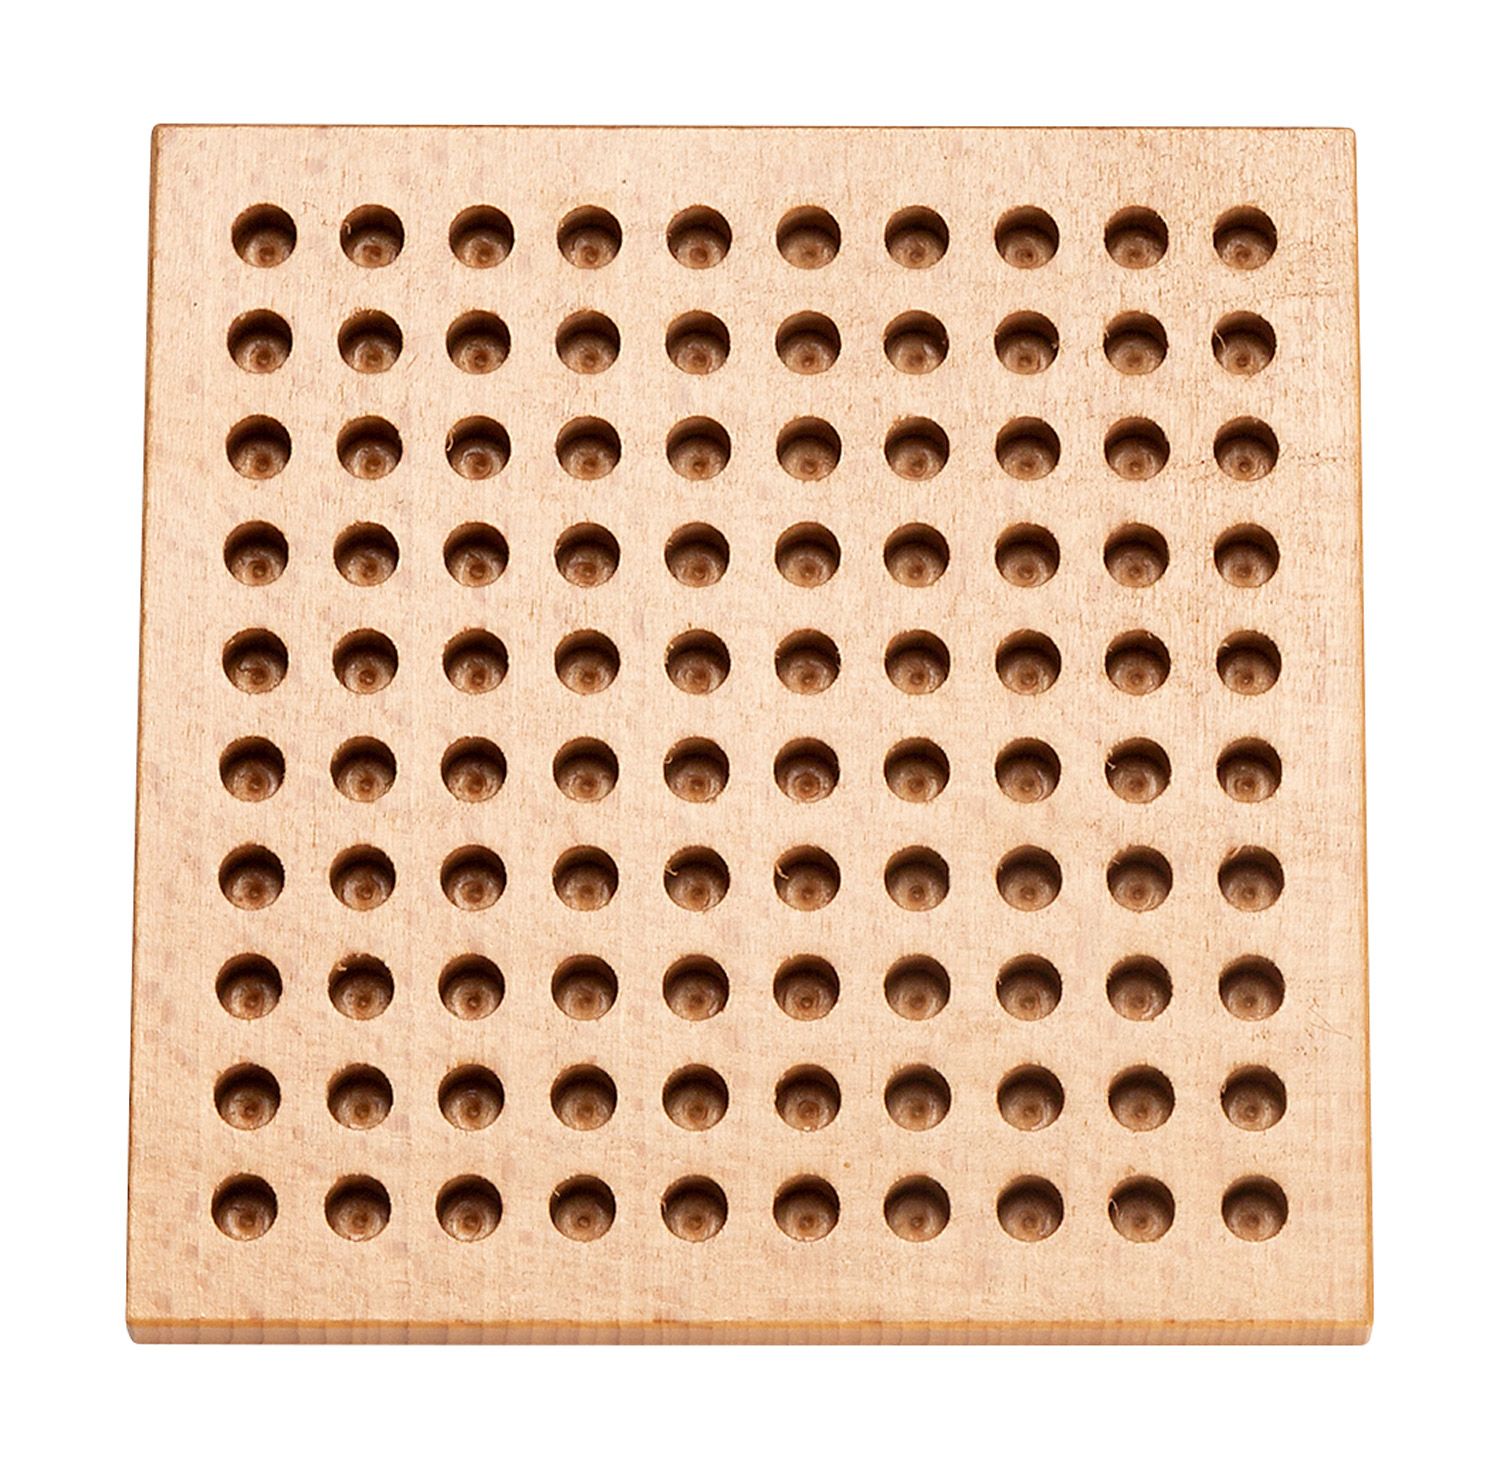 Pennenbord hout klein bord 13,5 x 13,5 cm voor 100 pennen van 7 mm Ø - 001038